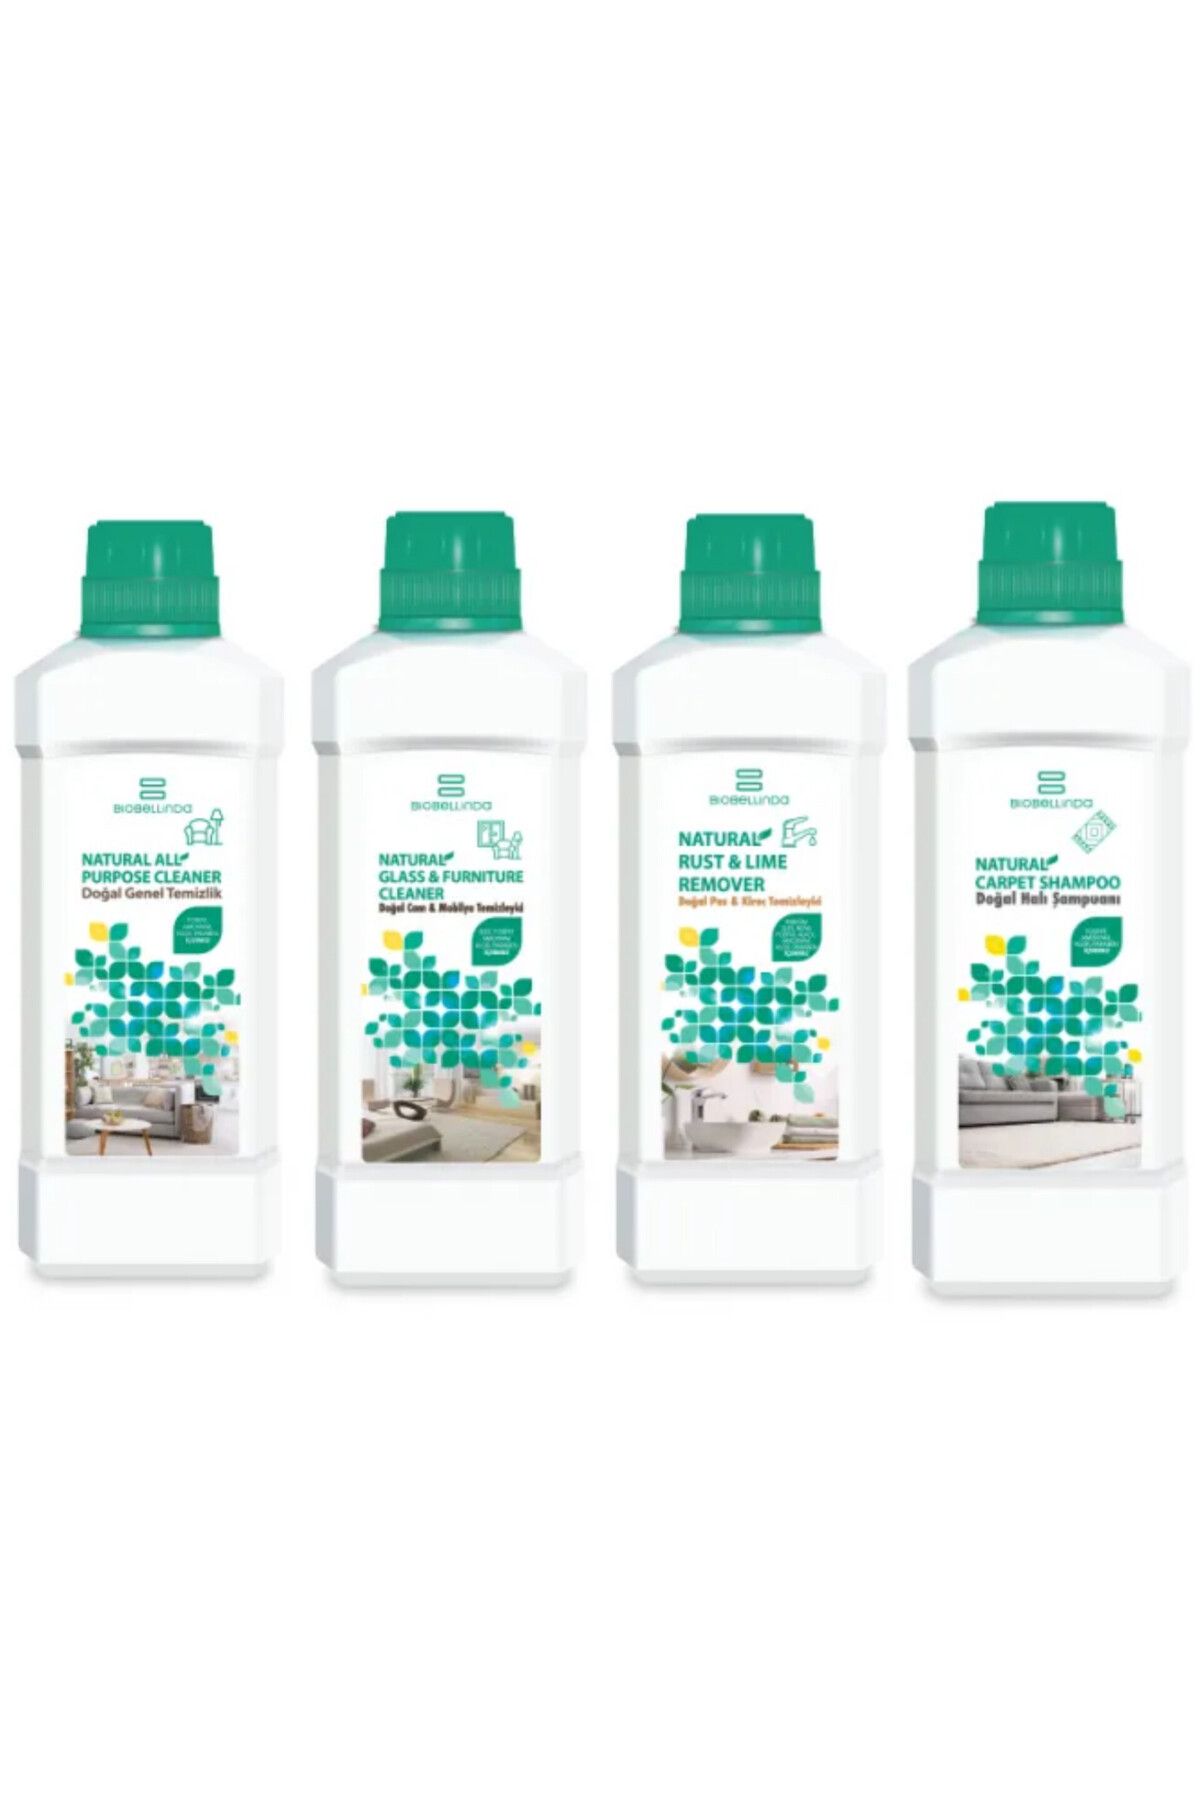 BioBellinda Genel Temizlik Pas Kireç Halı Şampuanı Cam Mobilya Temizleyici 4 lü Temizlik seti 750 ml 4 adet